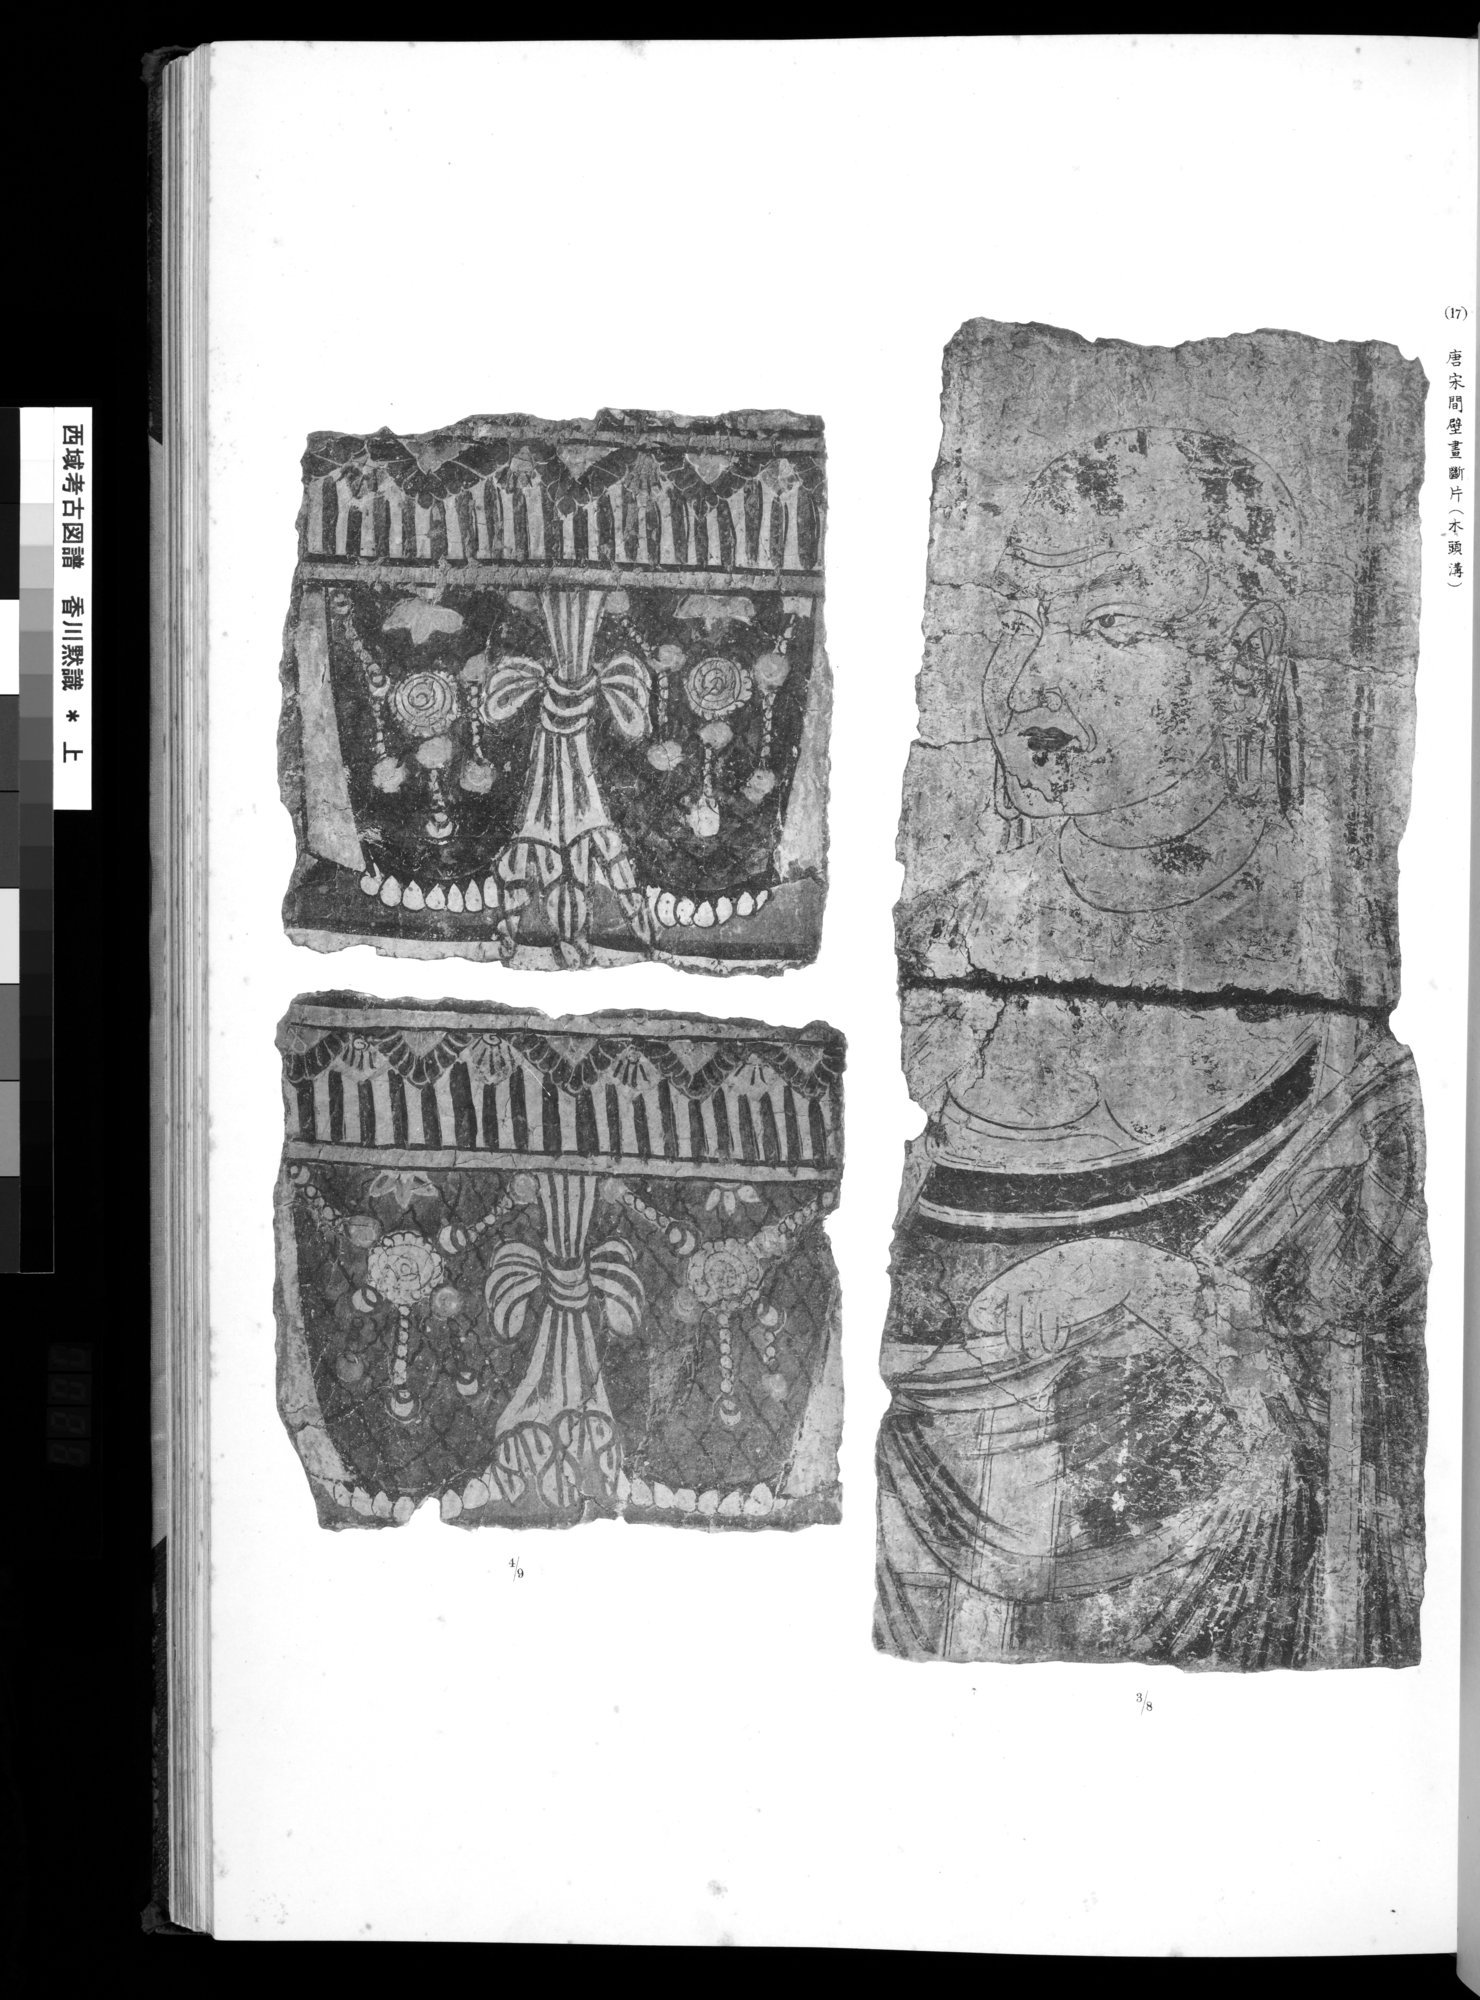 西域考古図譜 : vol.1 / Page 55 (Grayscale High Resolution Image)